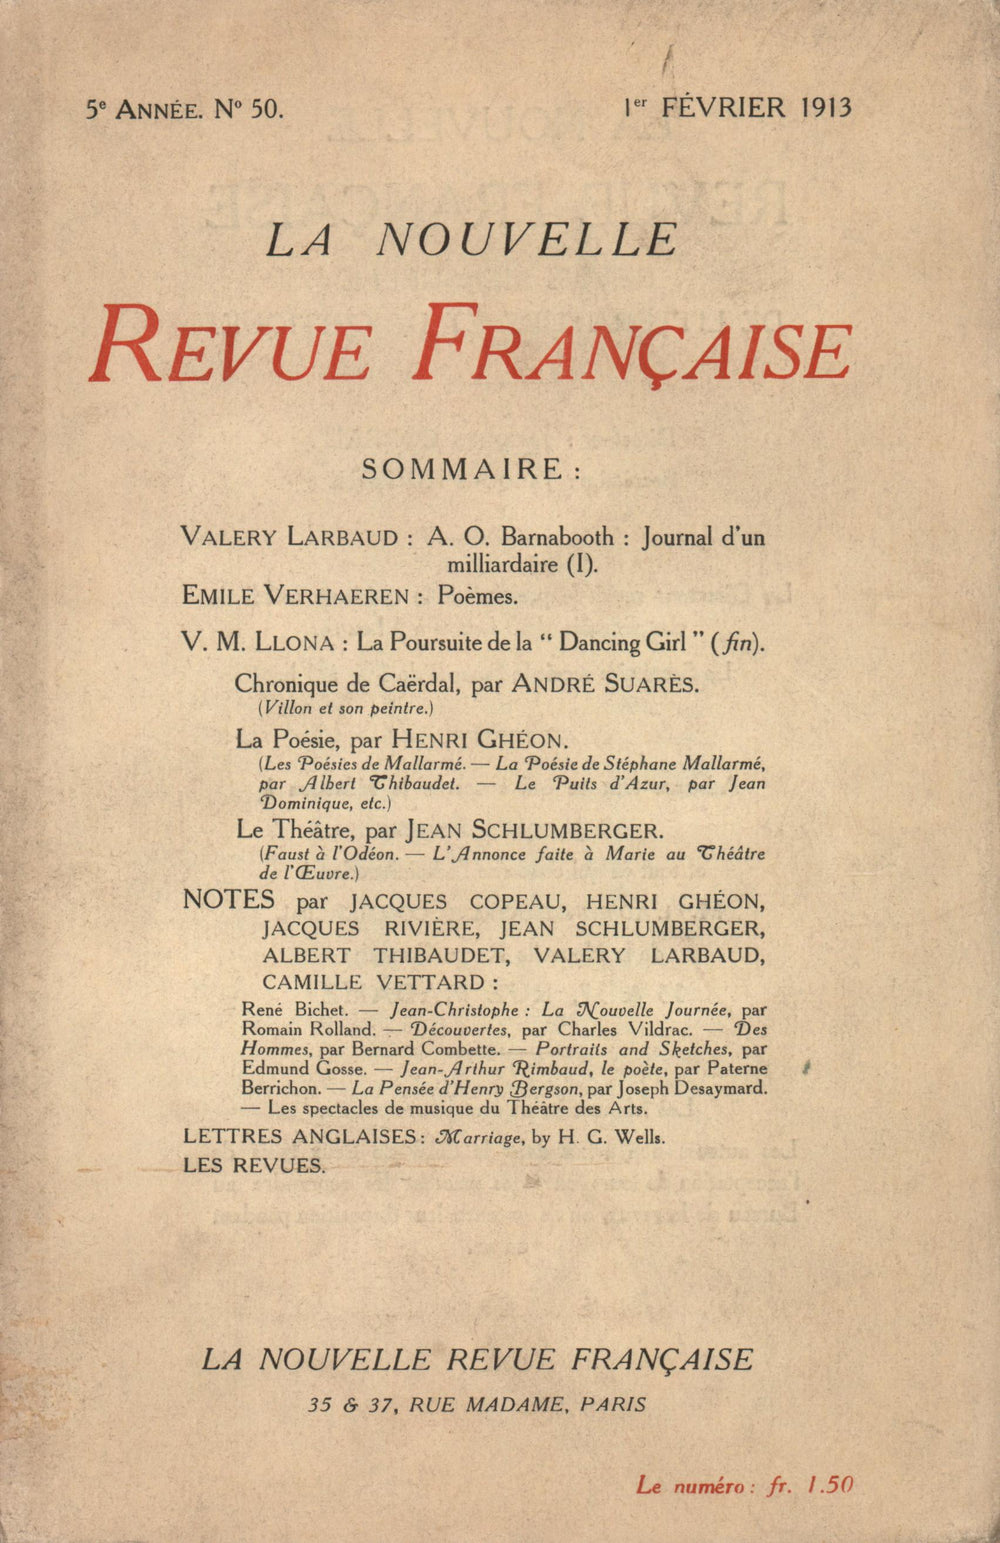 La Nouvelle Revue Française N' 50 (Février 1913)